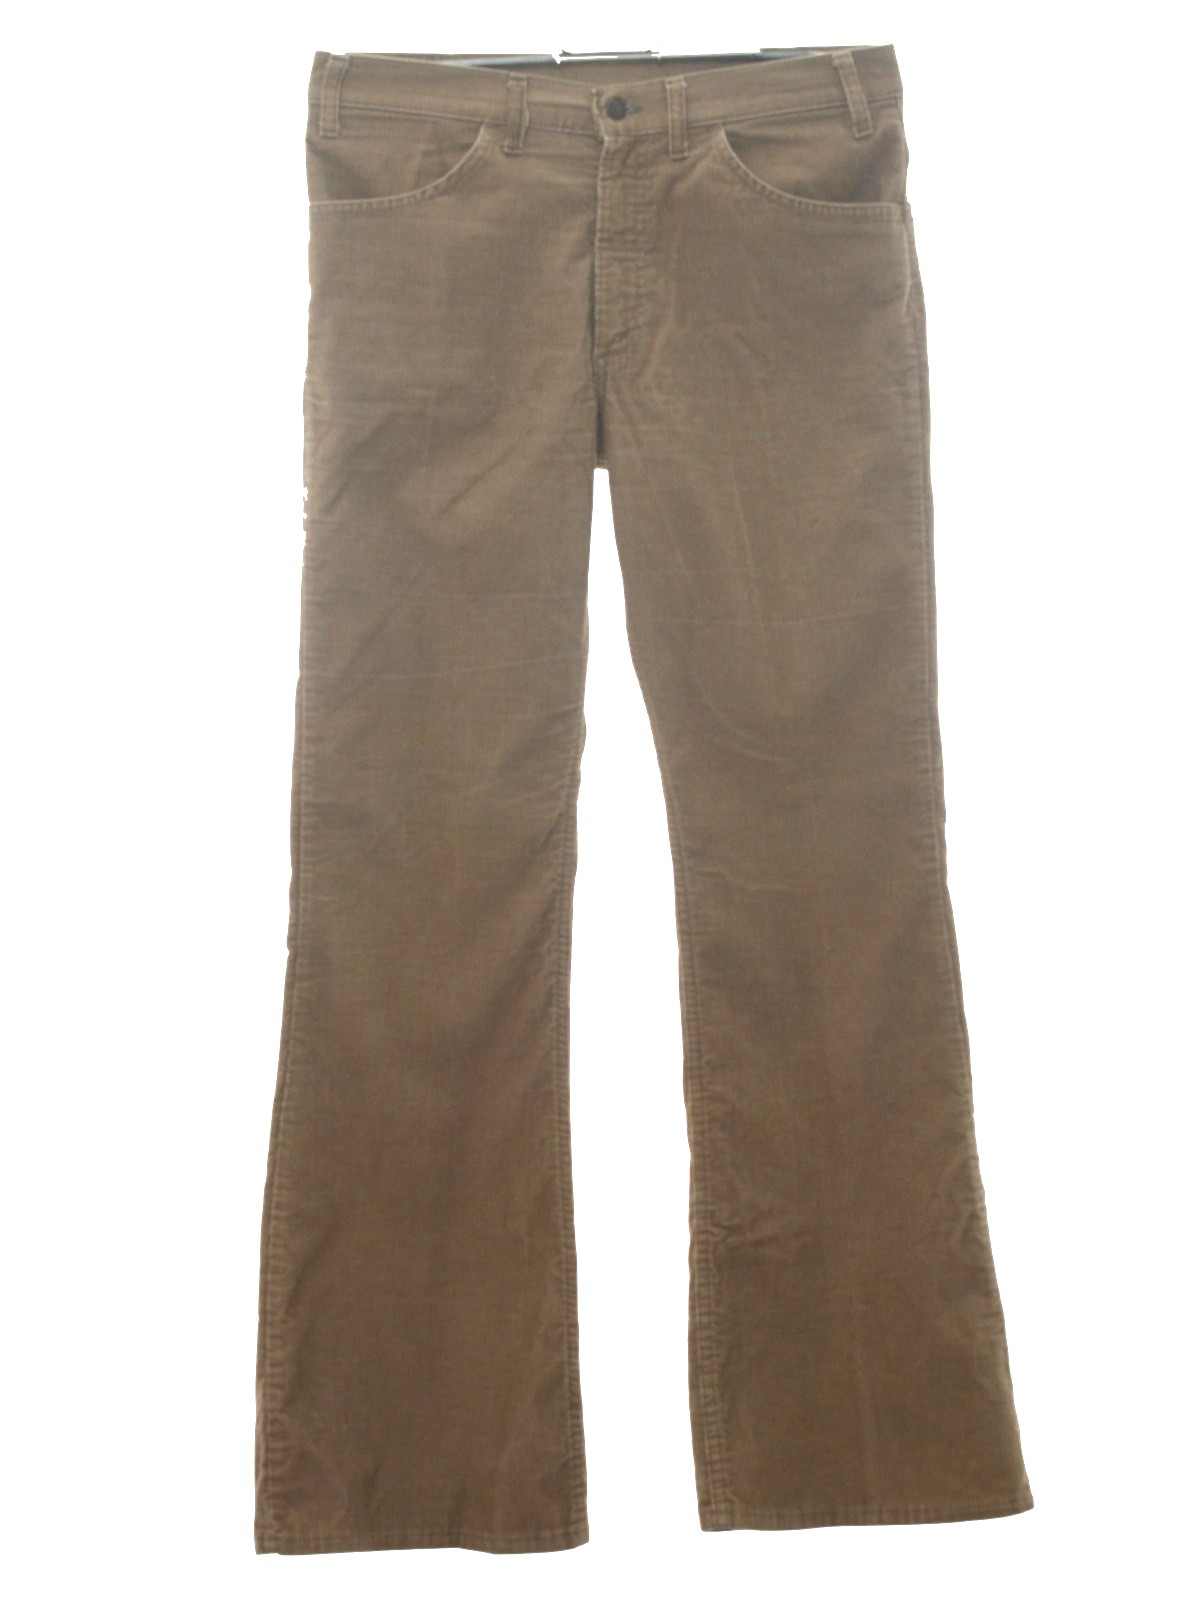 Levis 1970s Vintage Bellbottom Pants: 70s -Levis- Mens tan cotton and ...